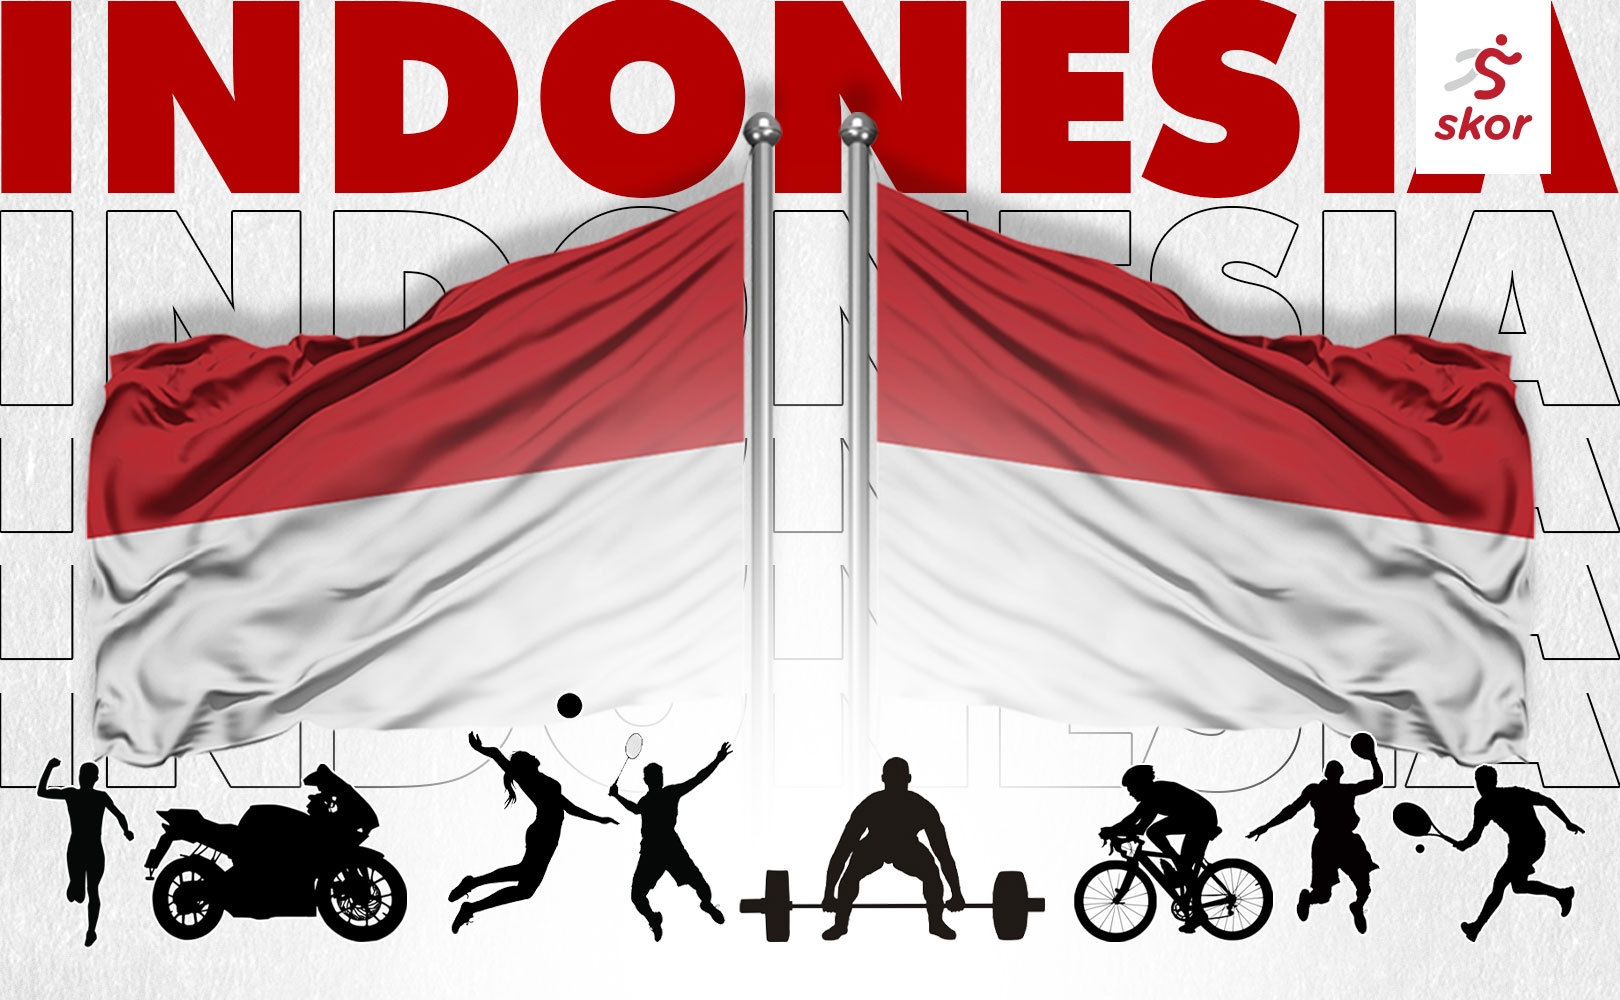 OPINI: Olahraga Indonesia 2022, Harapan dan Tantangan